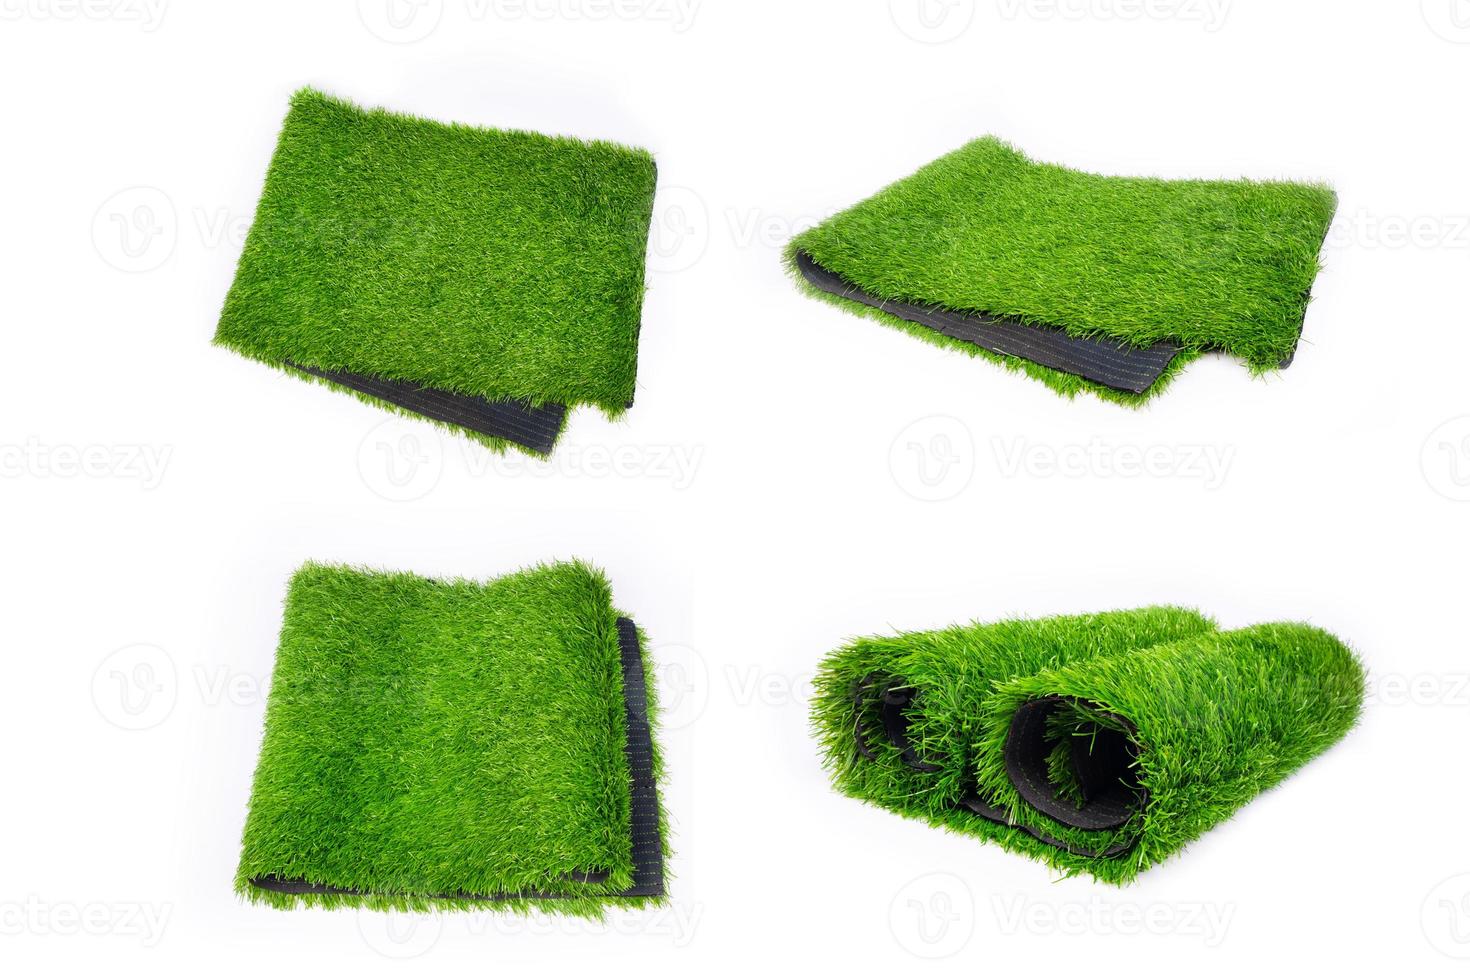 collage av konstgjord plastgräsklädsel, ställ plastgrönt täckning för idrottsplatsillustration foto